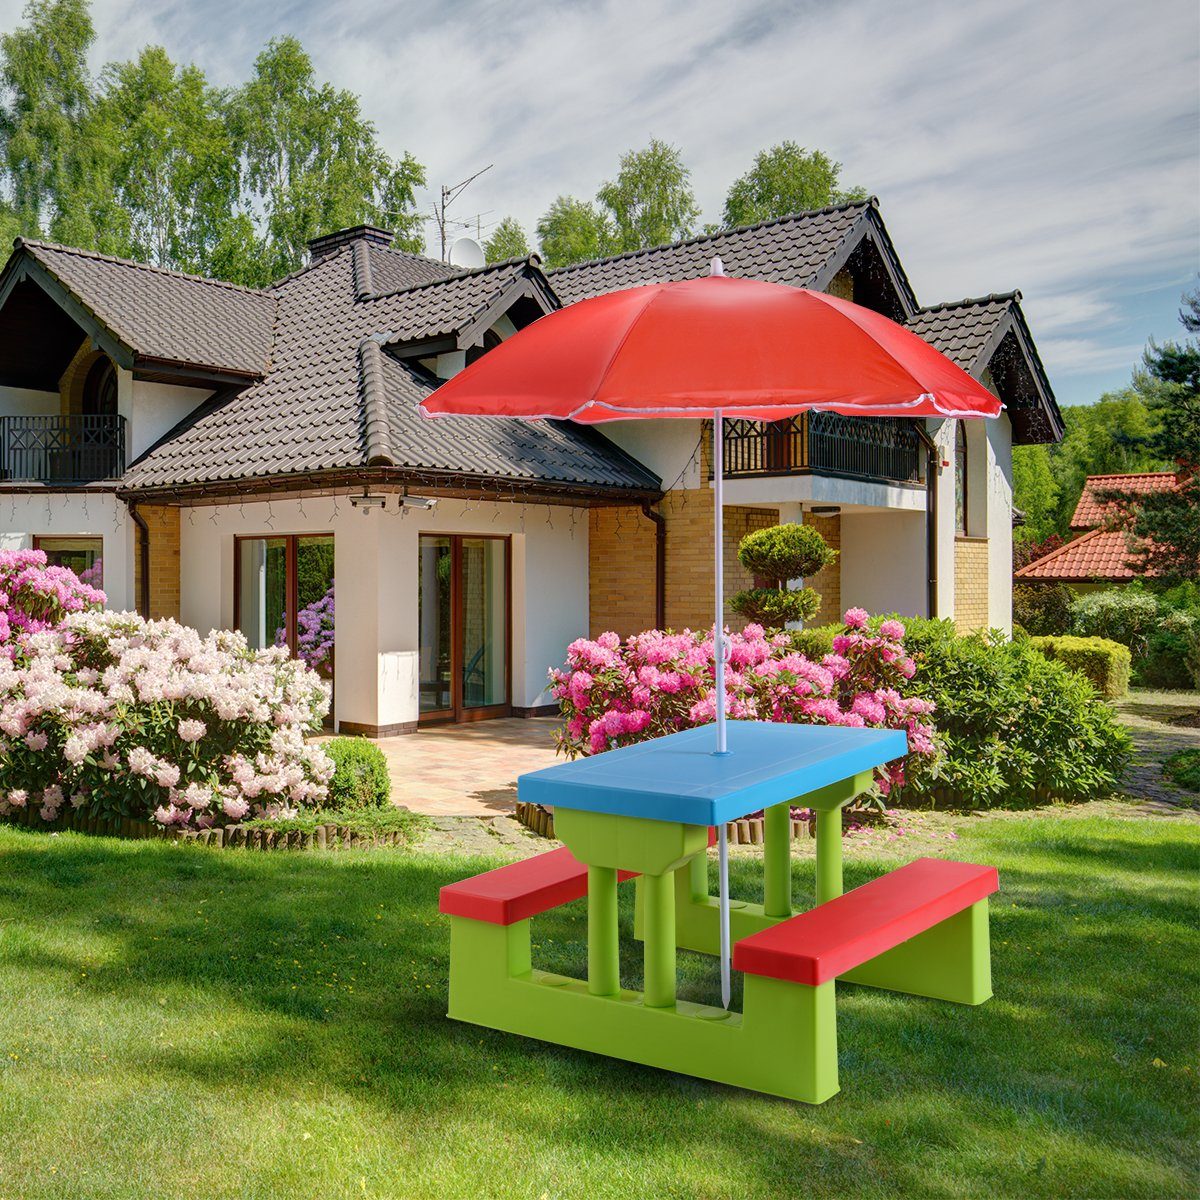 mit Sonnenschirm Kindertisch, Kindersitzgruppe COSTWAY Rot+Blau+Grün Sitzgarnitur,